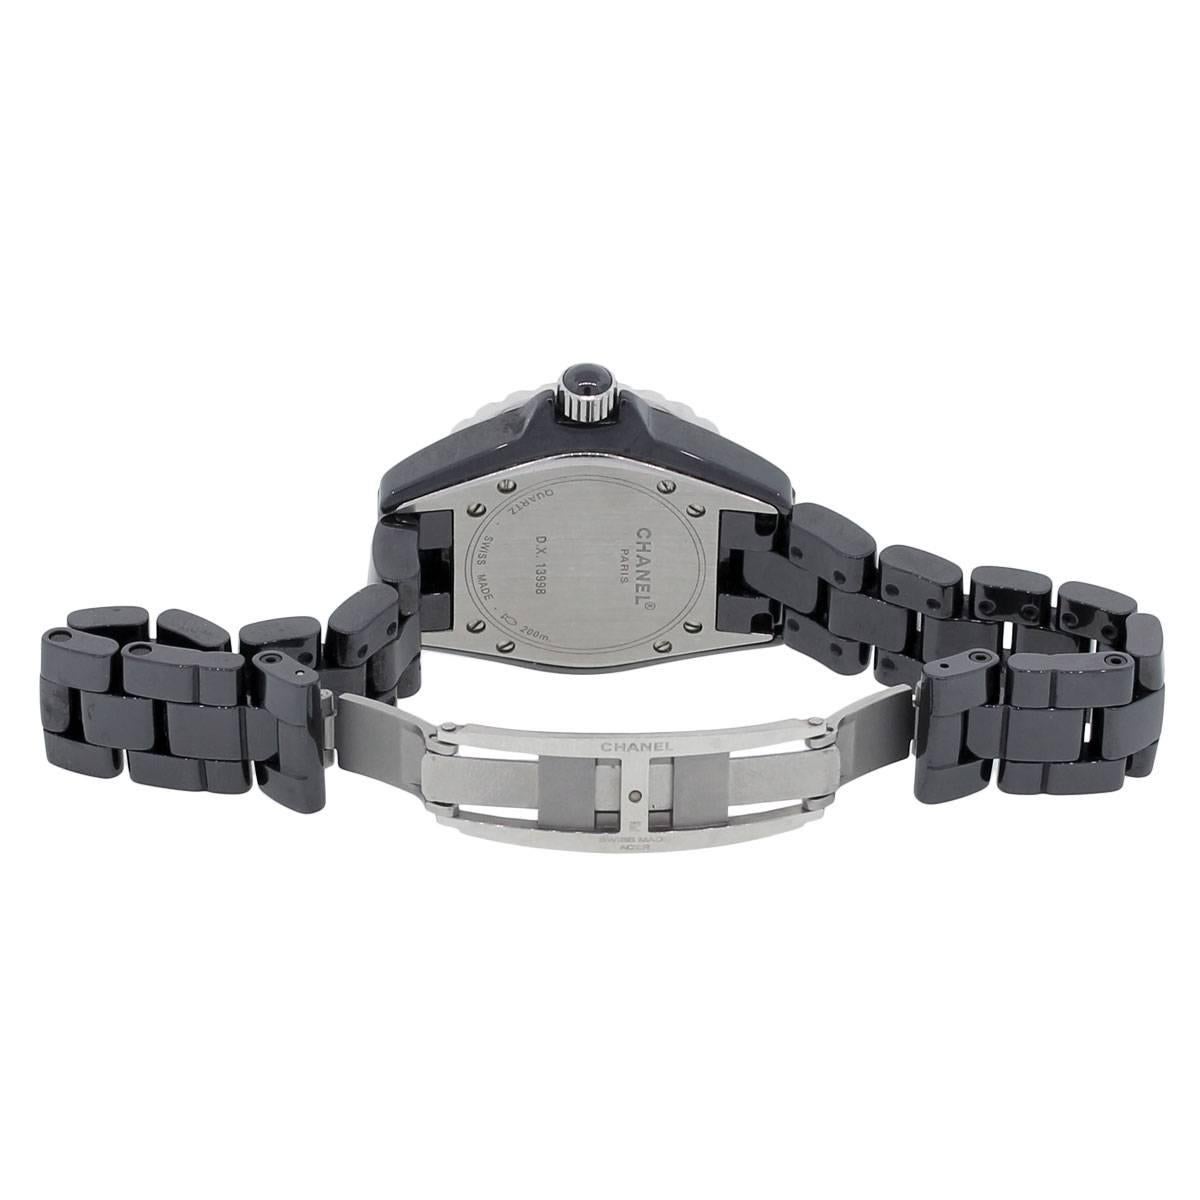 Women's Chanel Lady's Ceramic Diamond Bezel Black Dial Quartz Wristwatch